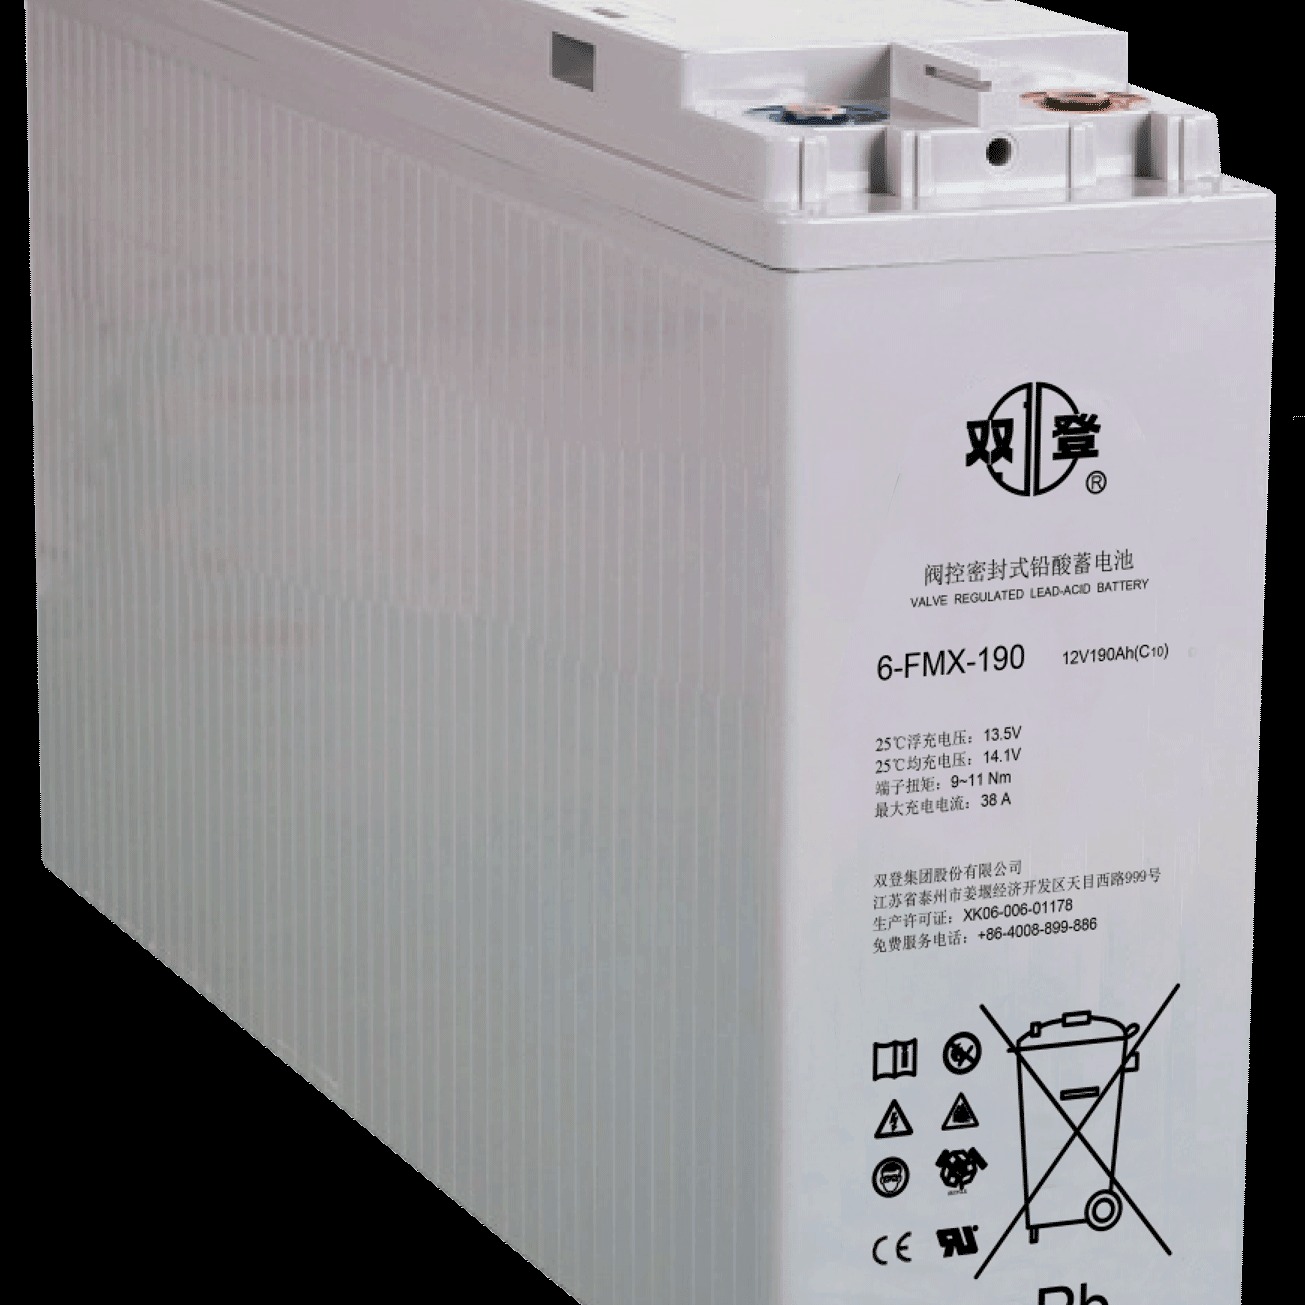 双登蓄电池6-FMX-190 12V190AH狭长型前置端子蓄电池 发电厂 铁路 UPS直流屏系统专用